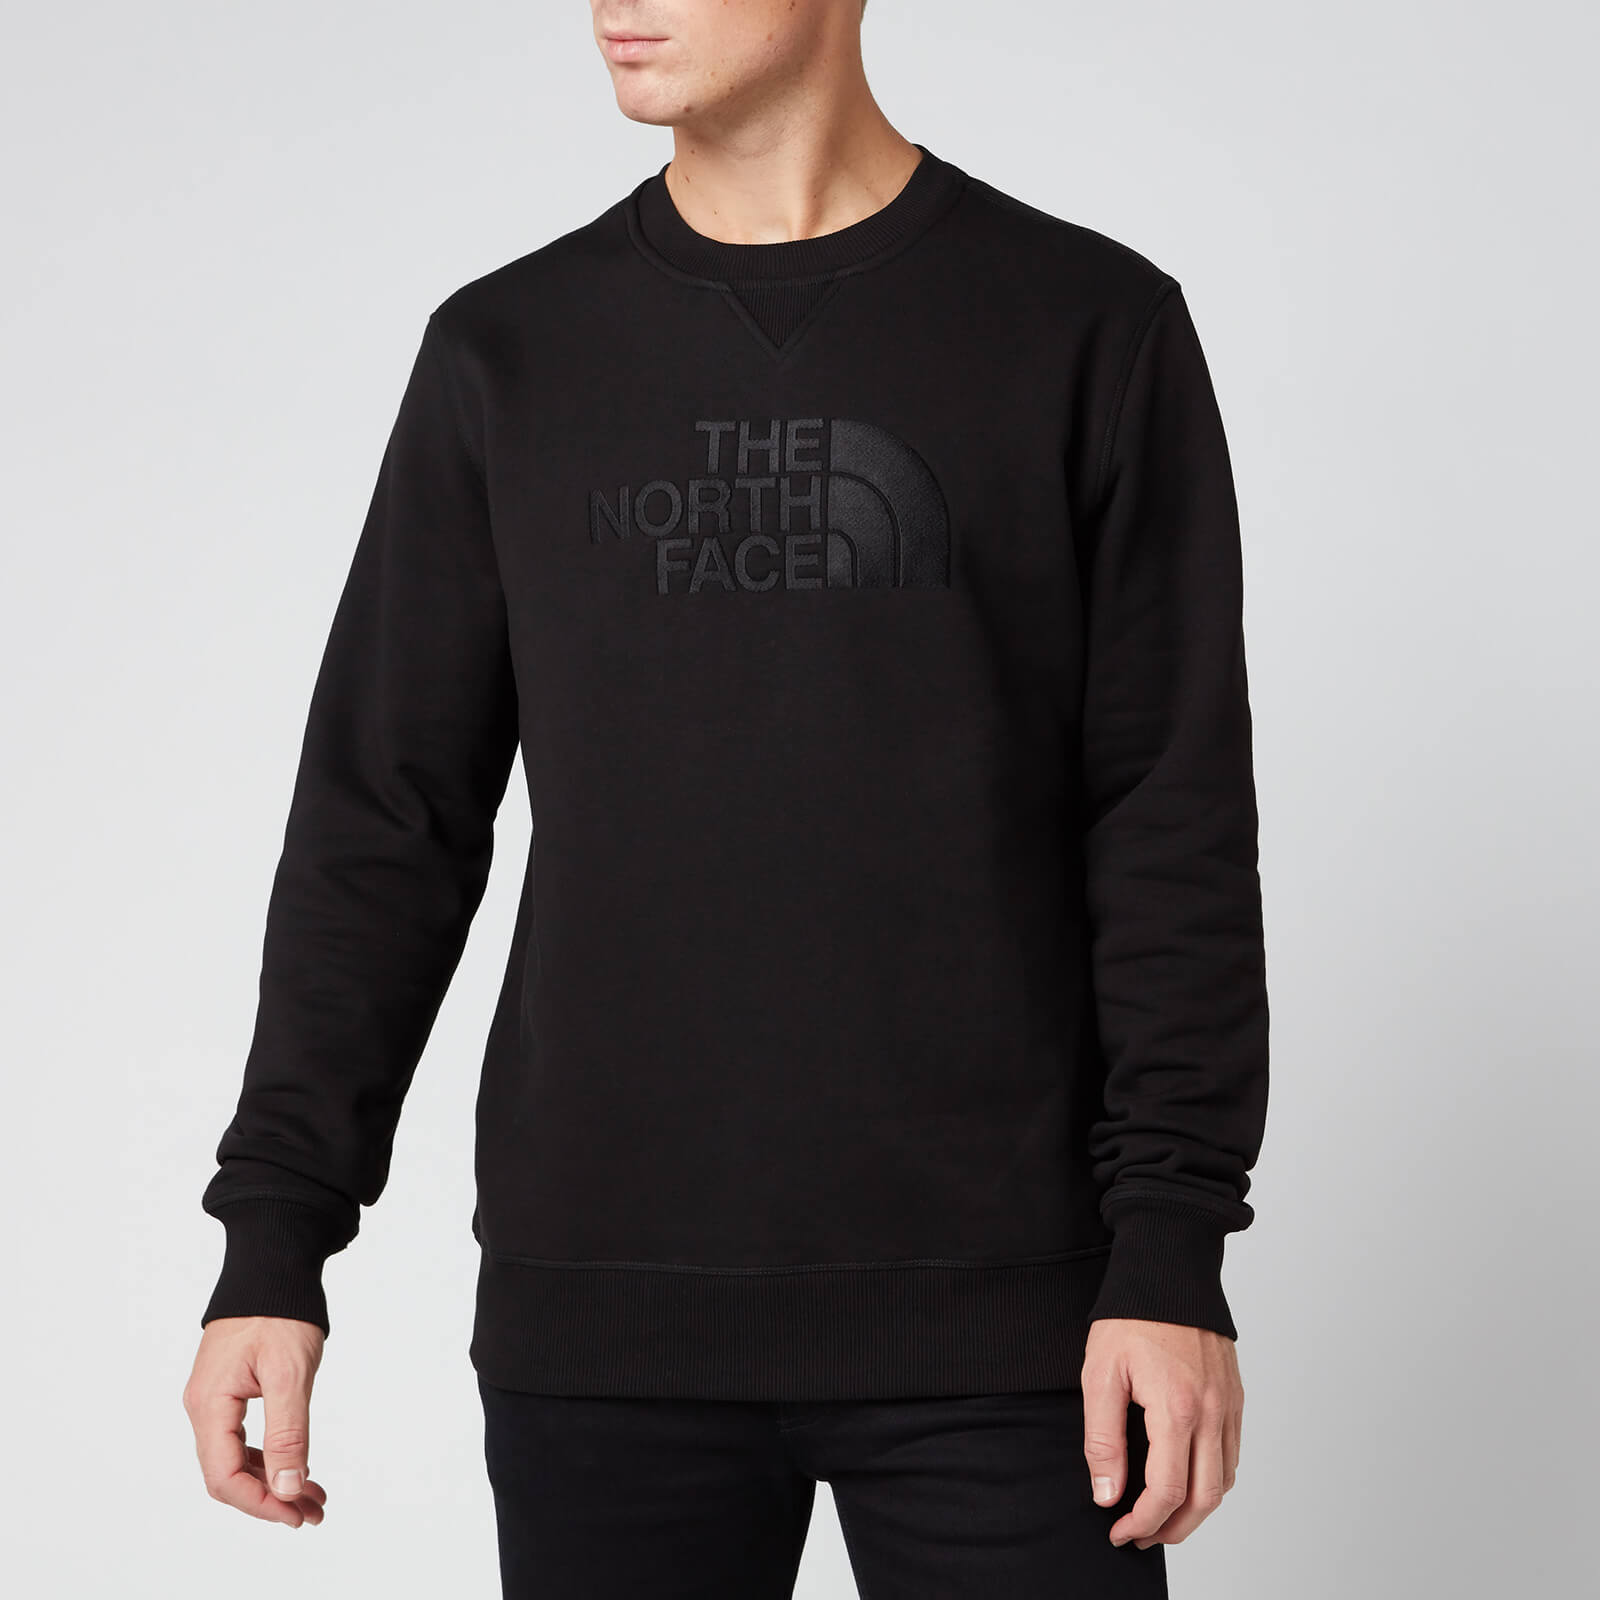 The North Face Men's Drew Peak Crew Sweatshirt - Tnf Black - L